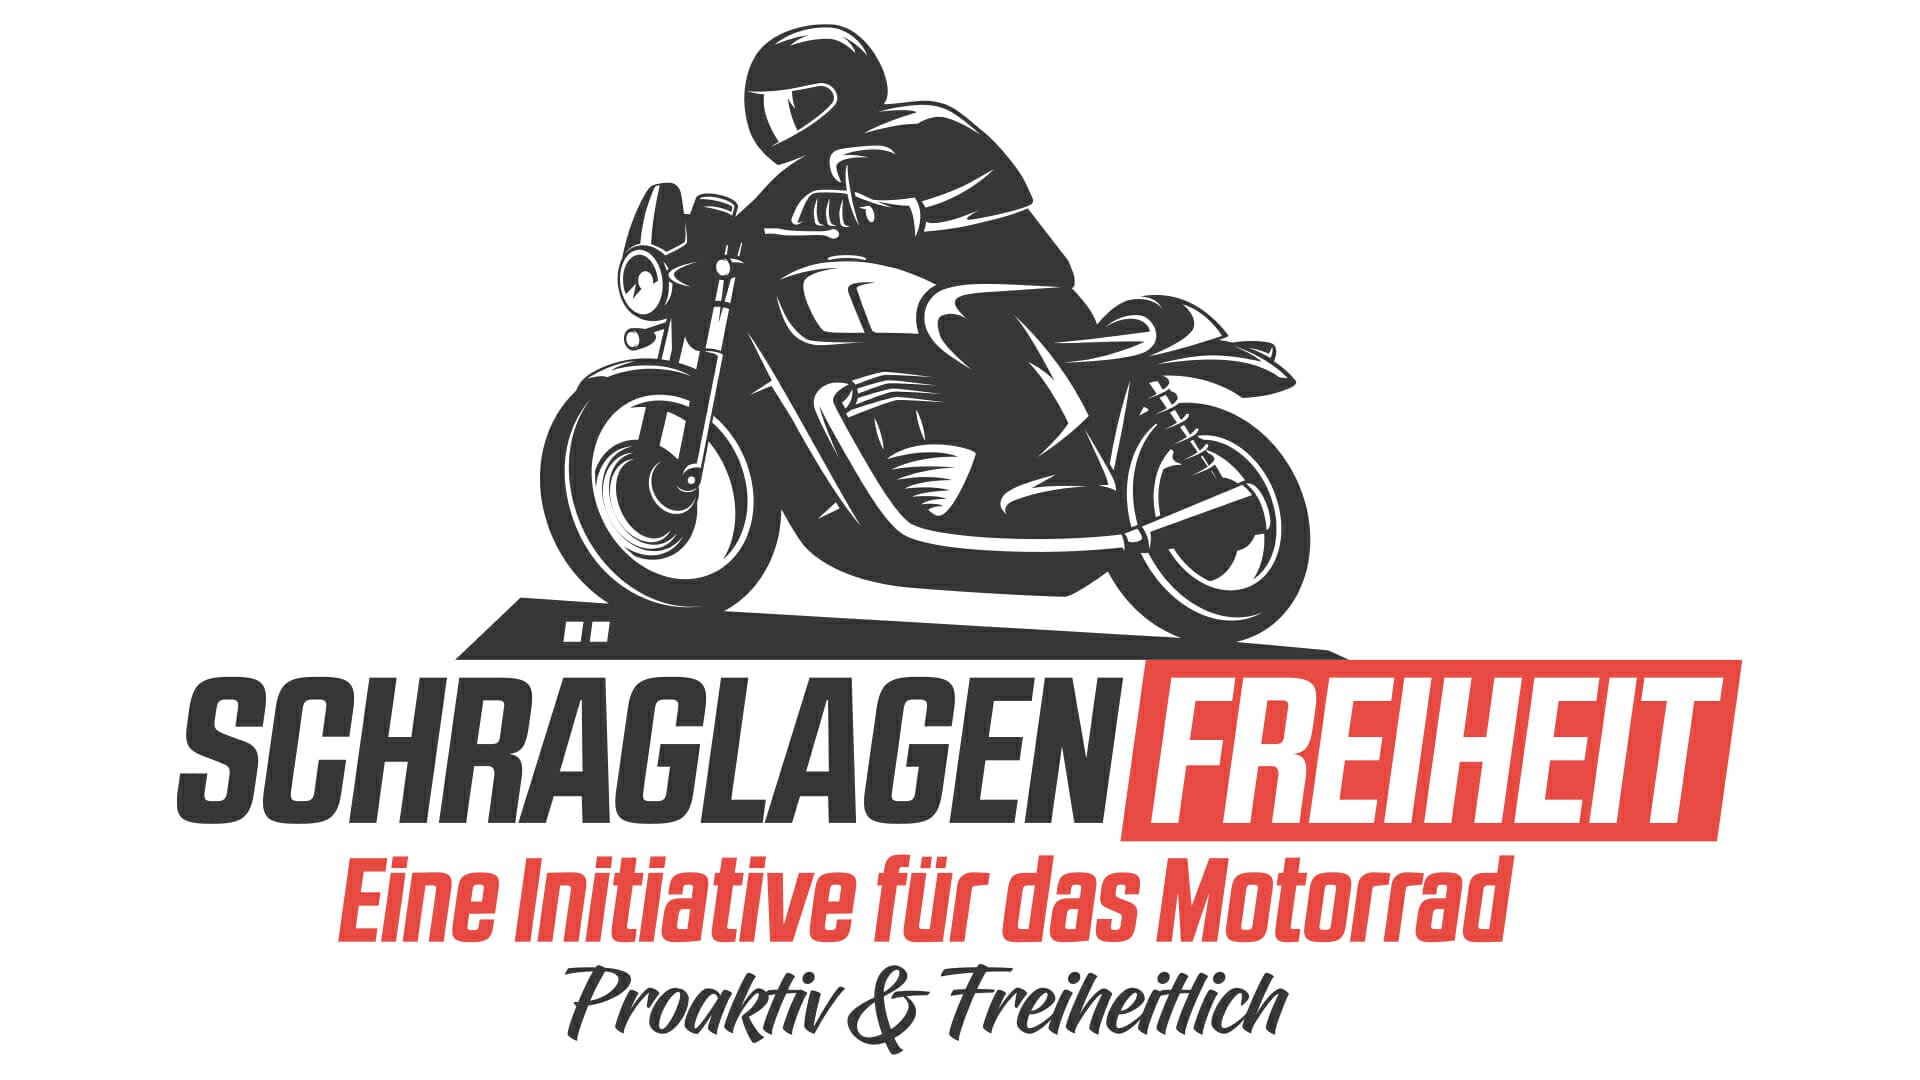 Initiative Schräglagenfreiheit: Offener Brief an die Landrätin des Landkreises Teltow‐Fläming - MOTORCYCLES.NEWS